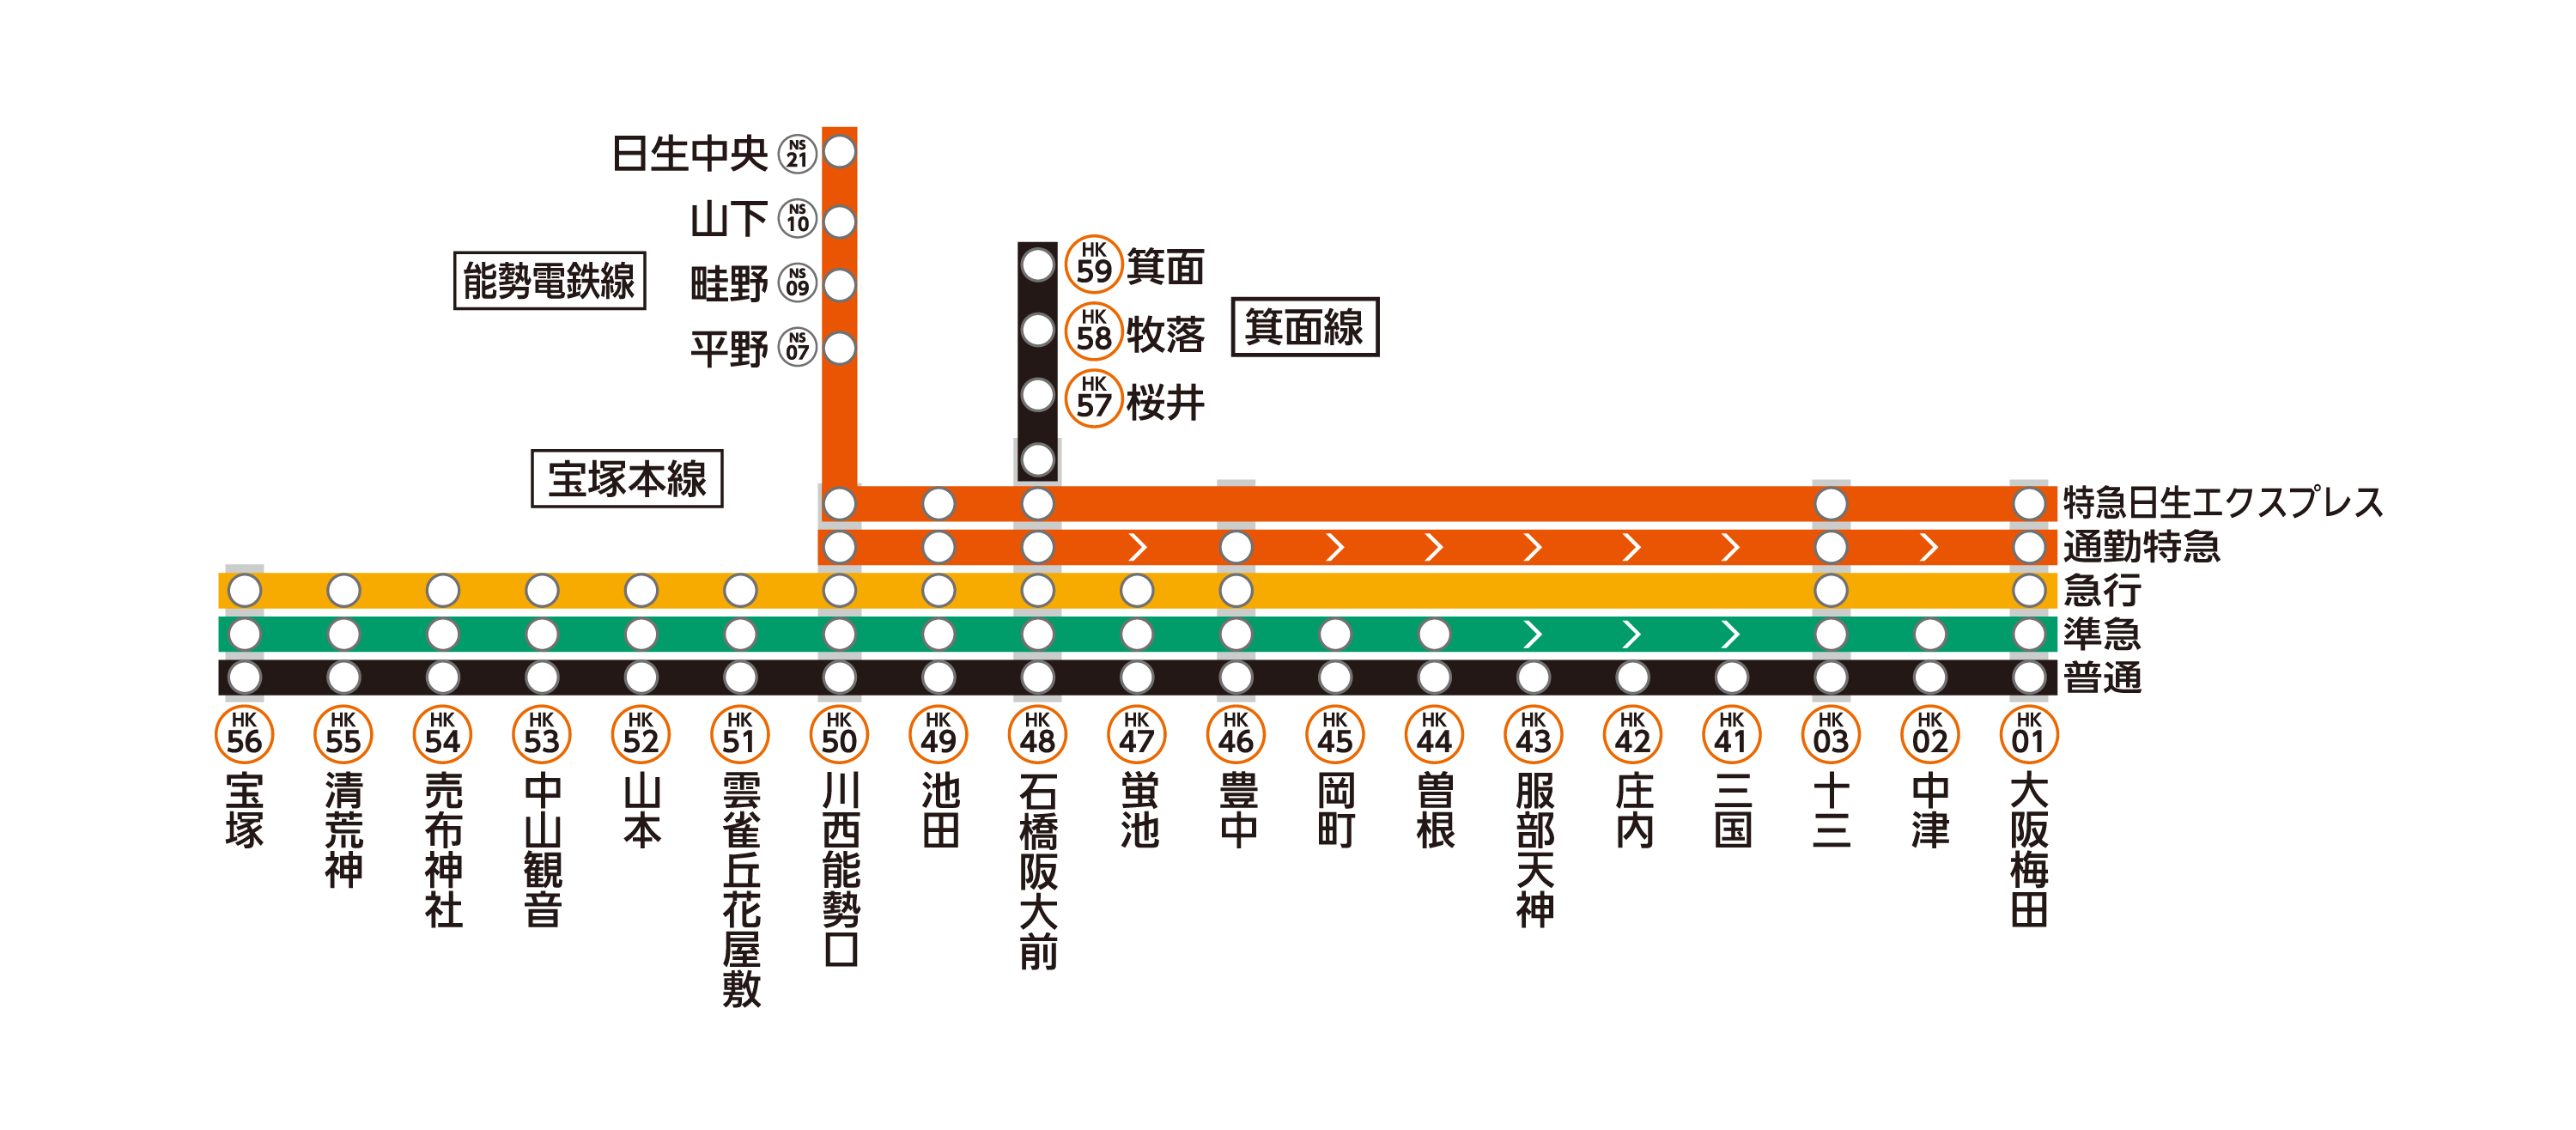 宝塚線は宝塚本線・箕面線から構成されています。
宝塚線各駅の列車発車時刻や停車駅は、上部の「サービス施設一覧」から、各駅の時刻表ページをご確認ください。